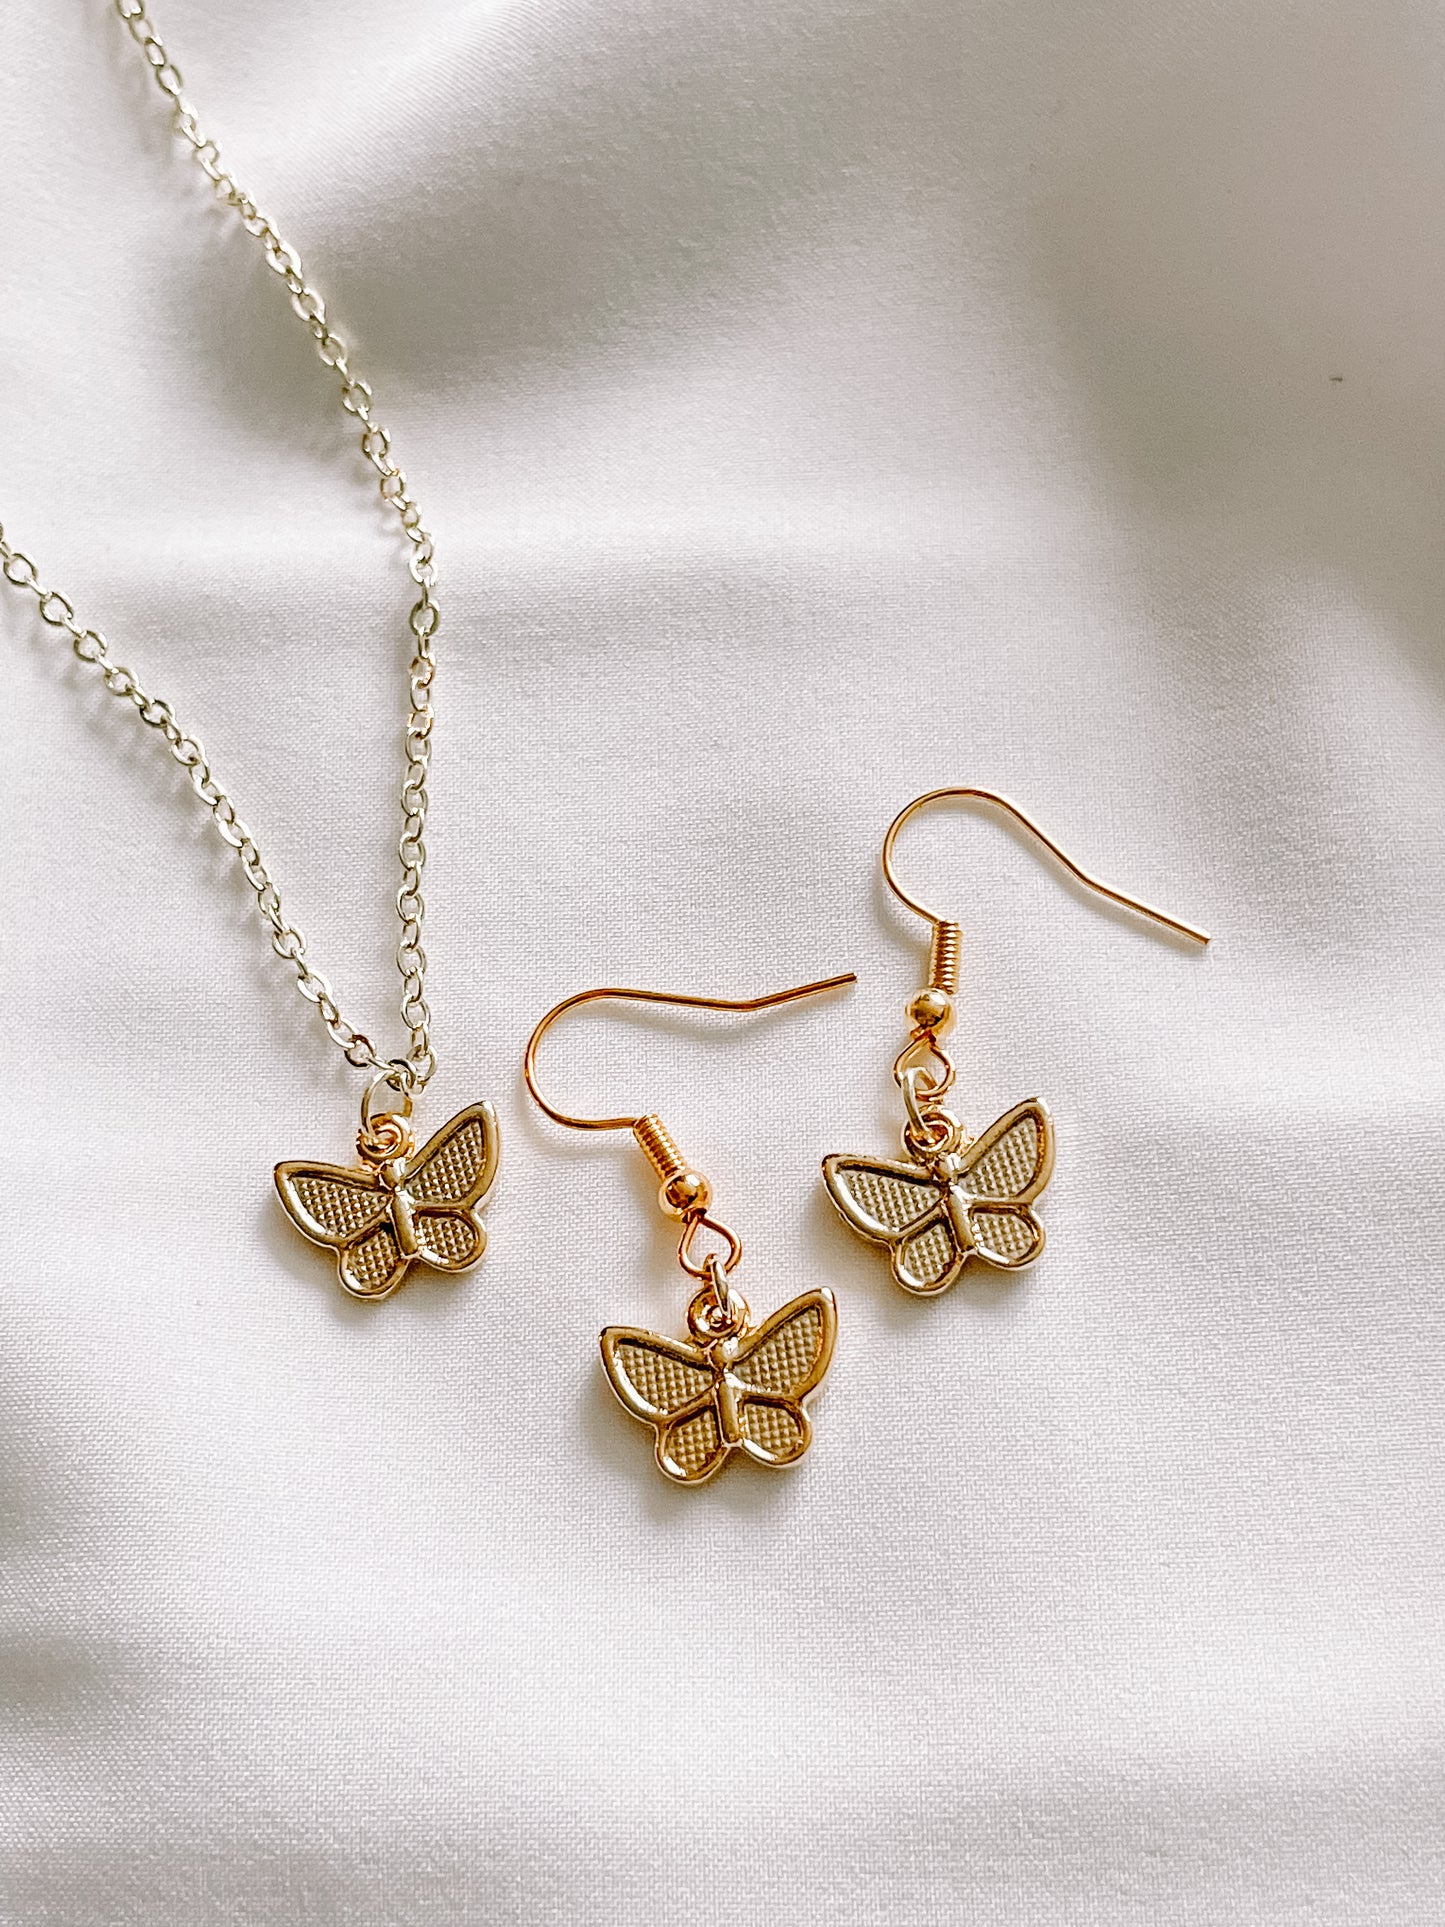 24k gold butterfly earrings